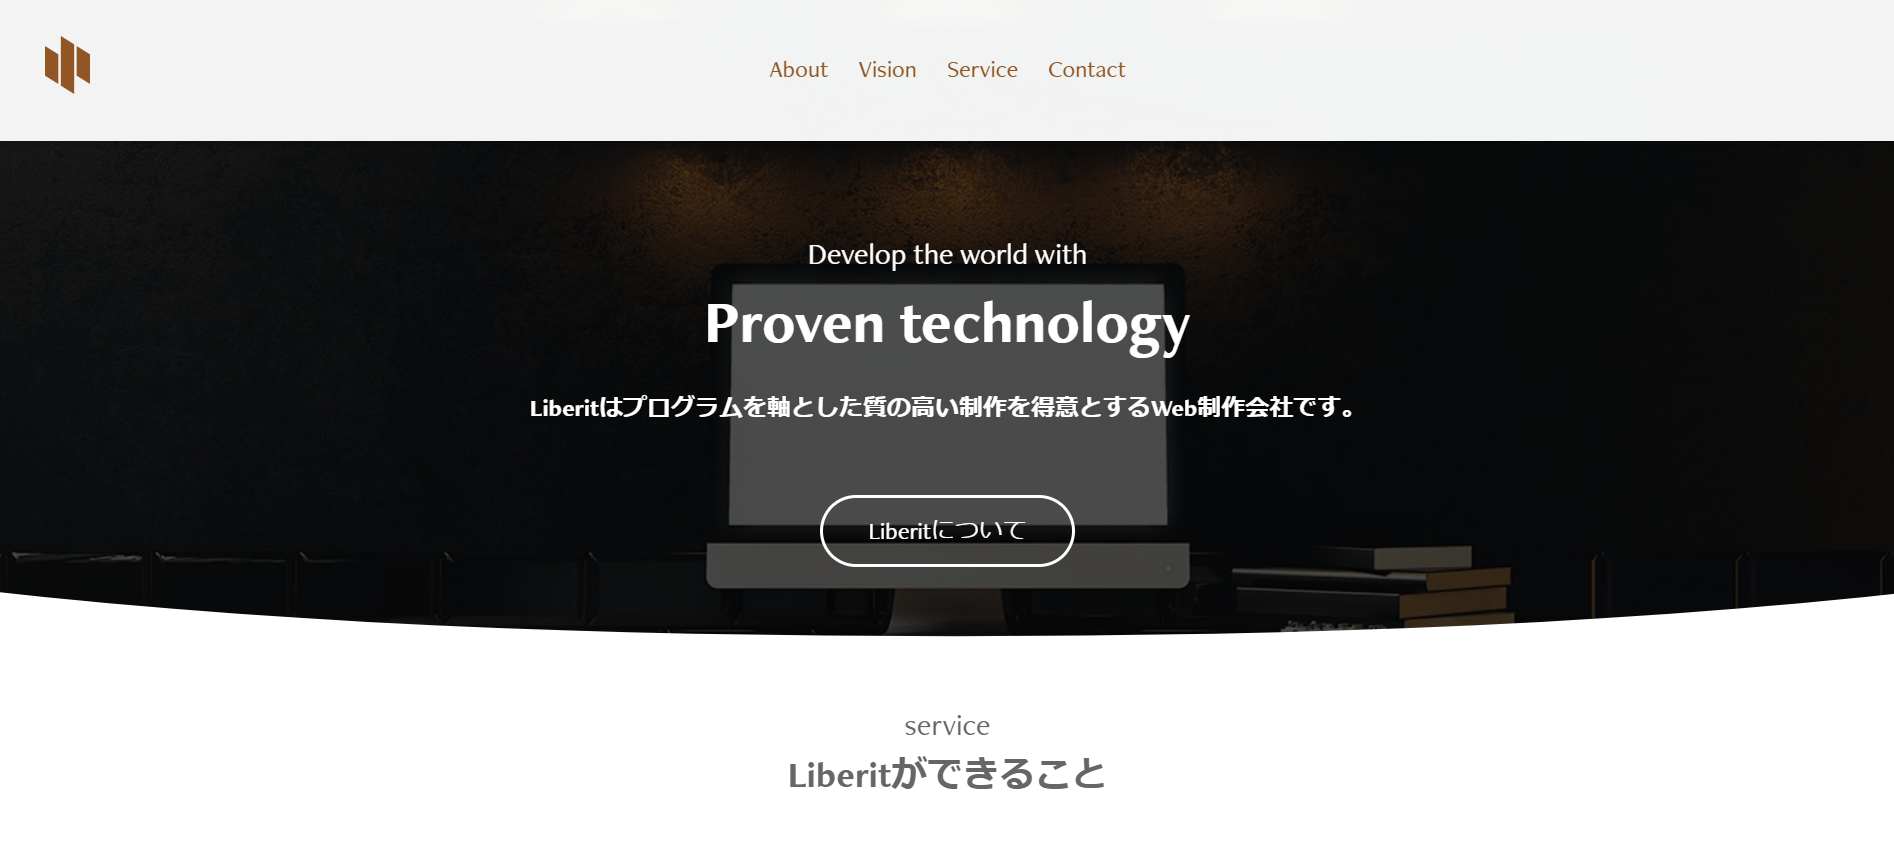 Liberit株式会社のLiberit株式会社サービス